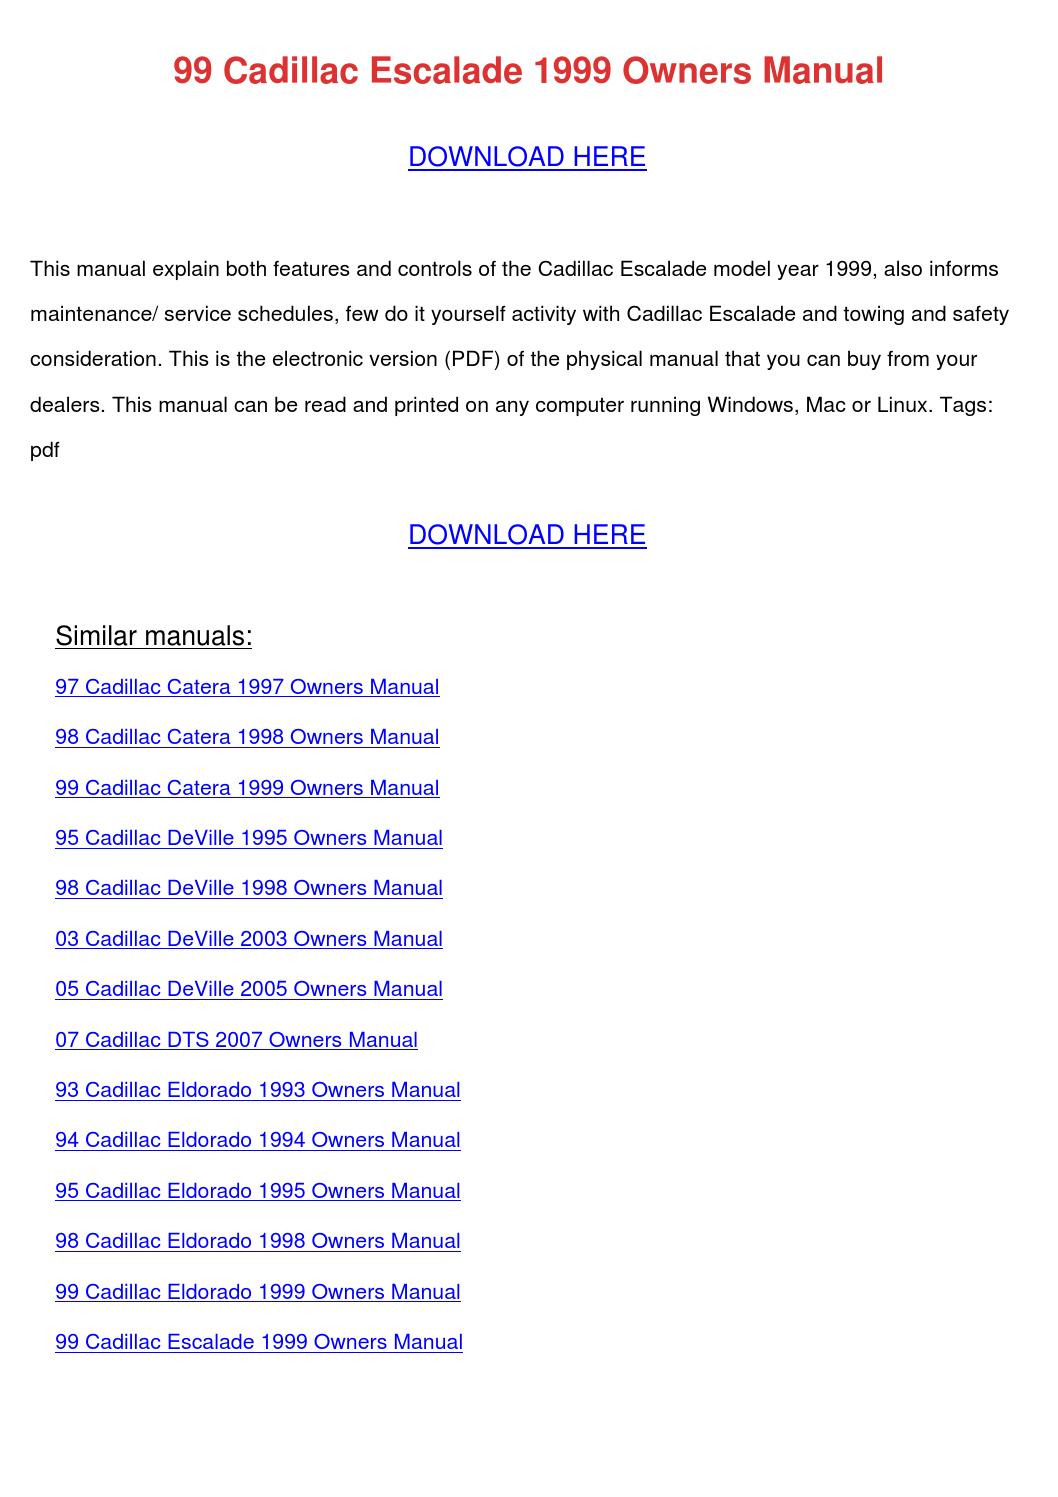 2005 cadillac escalade manual download